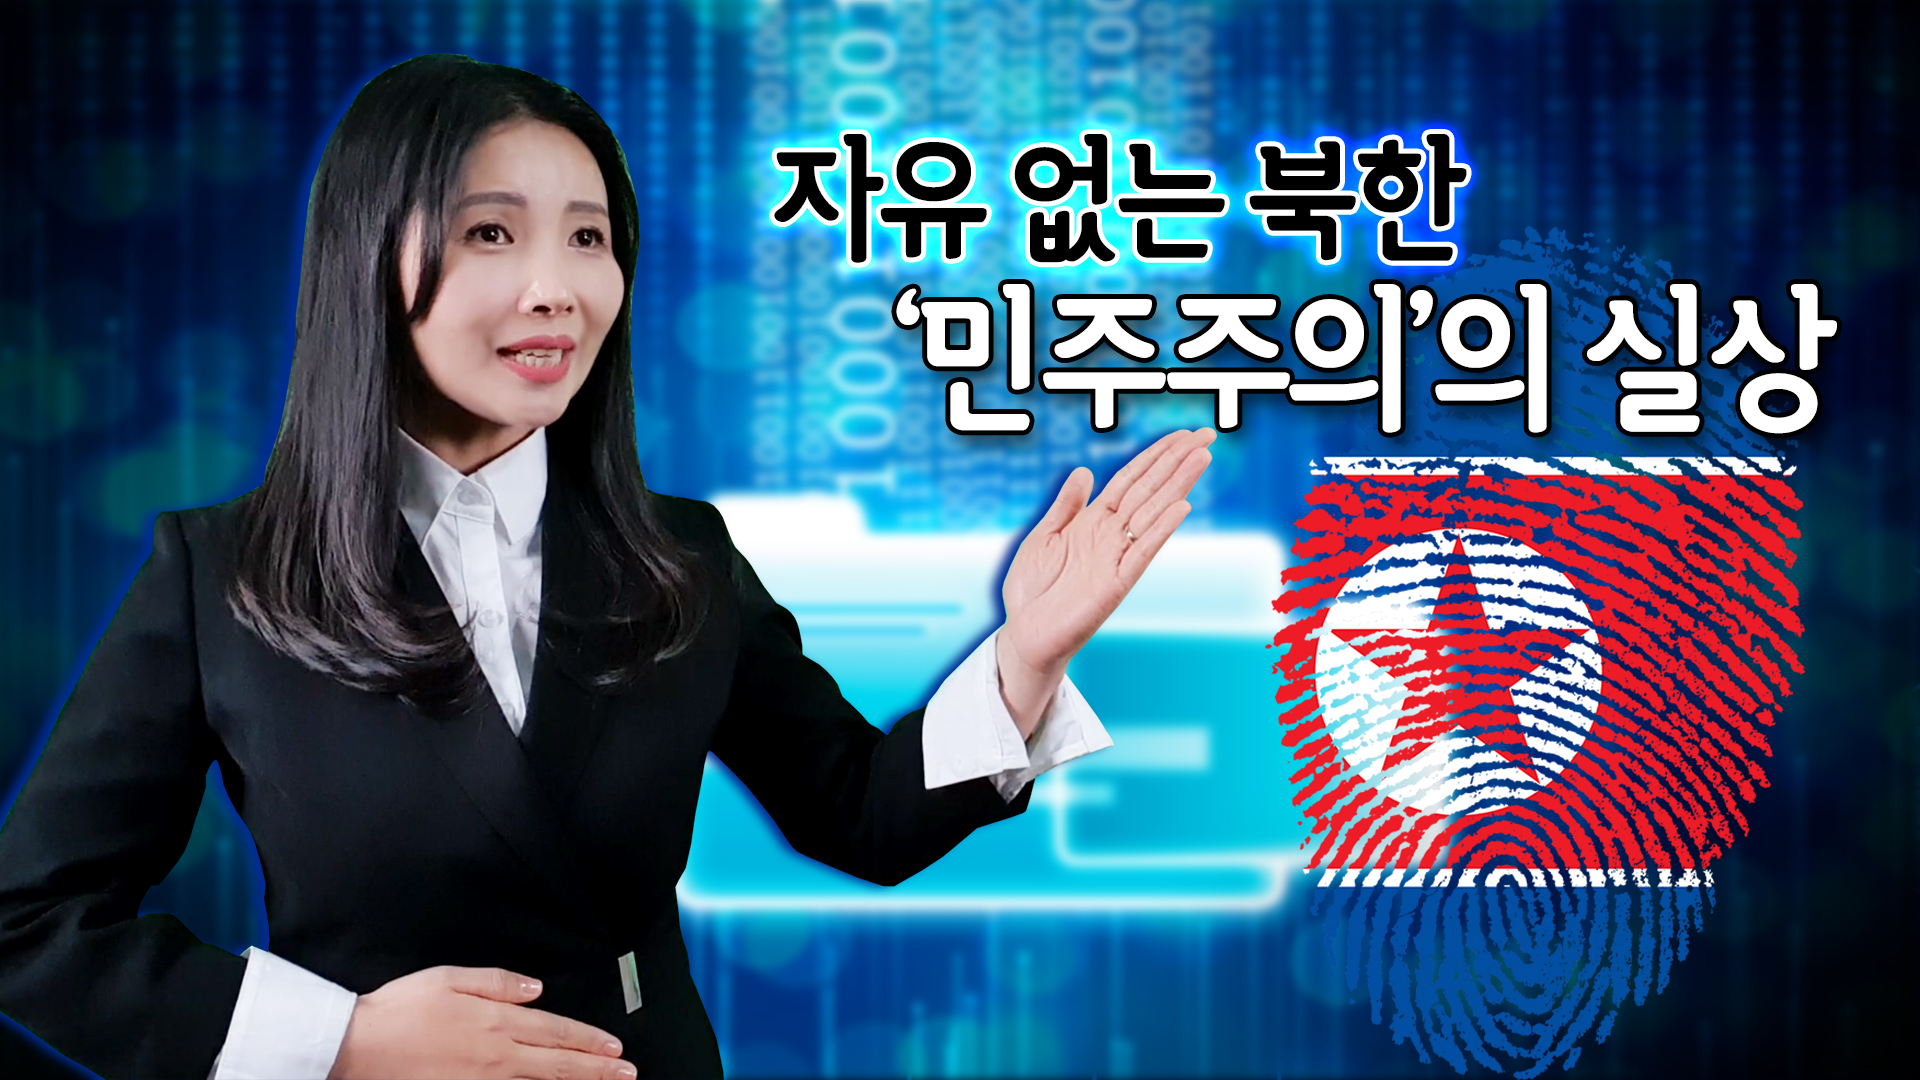 [국립통일교육원 X 윤설미TV] 자유 없는 북한 '민주주의'의 실상(자유민주주의의 소중함)